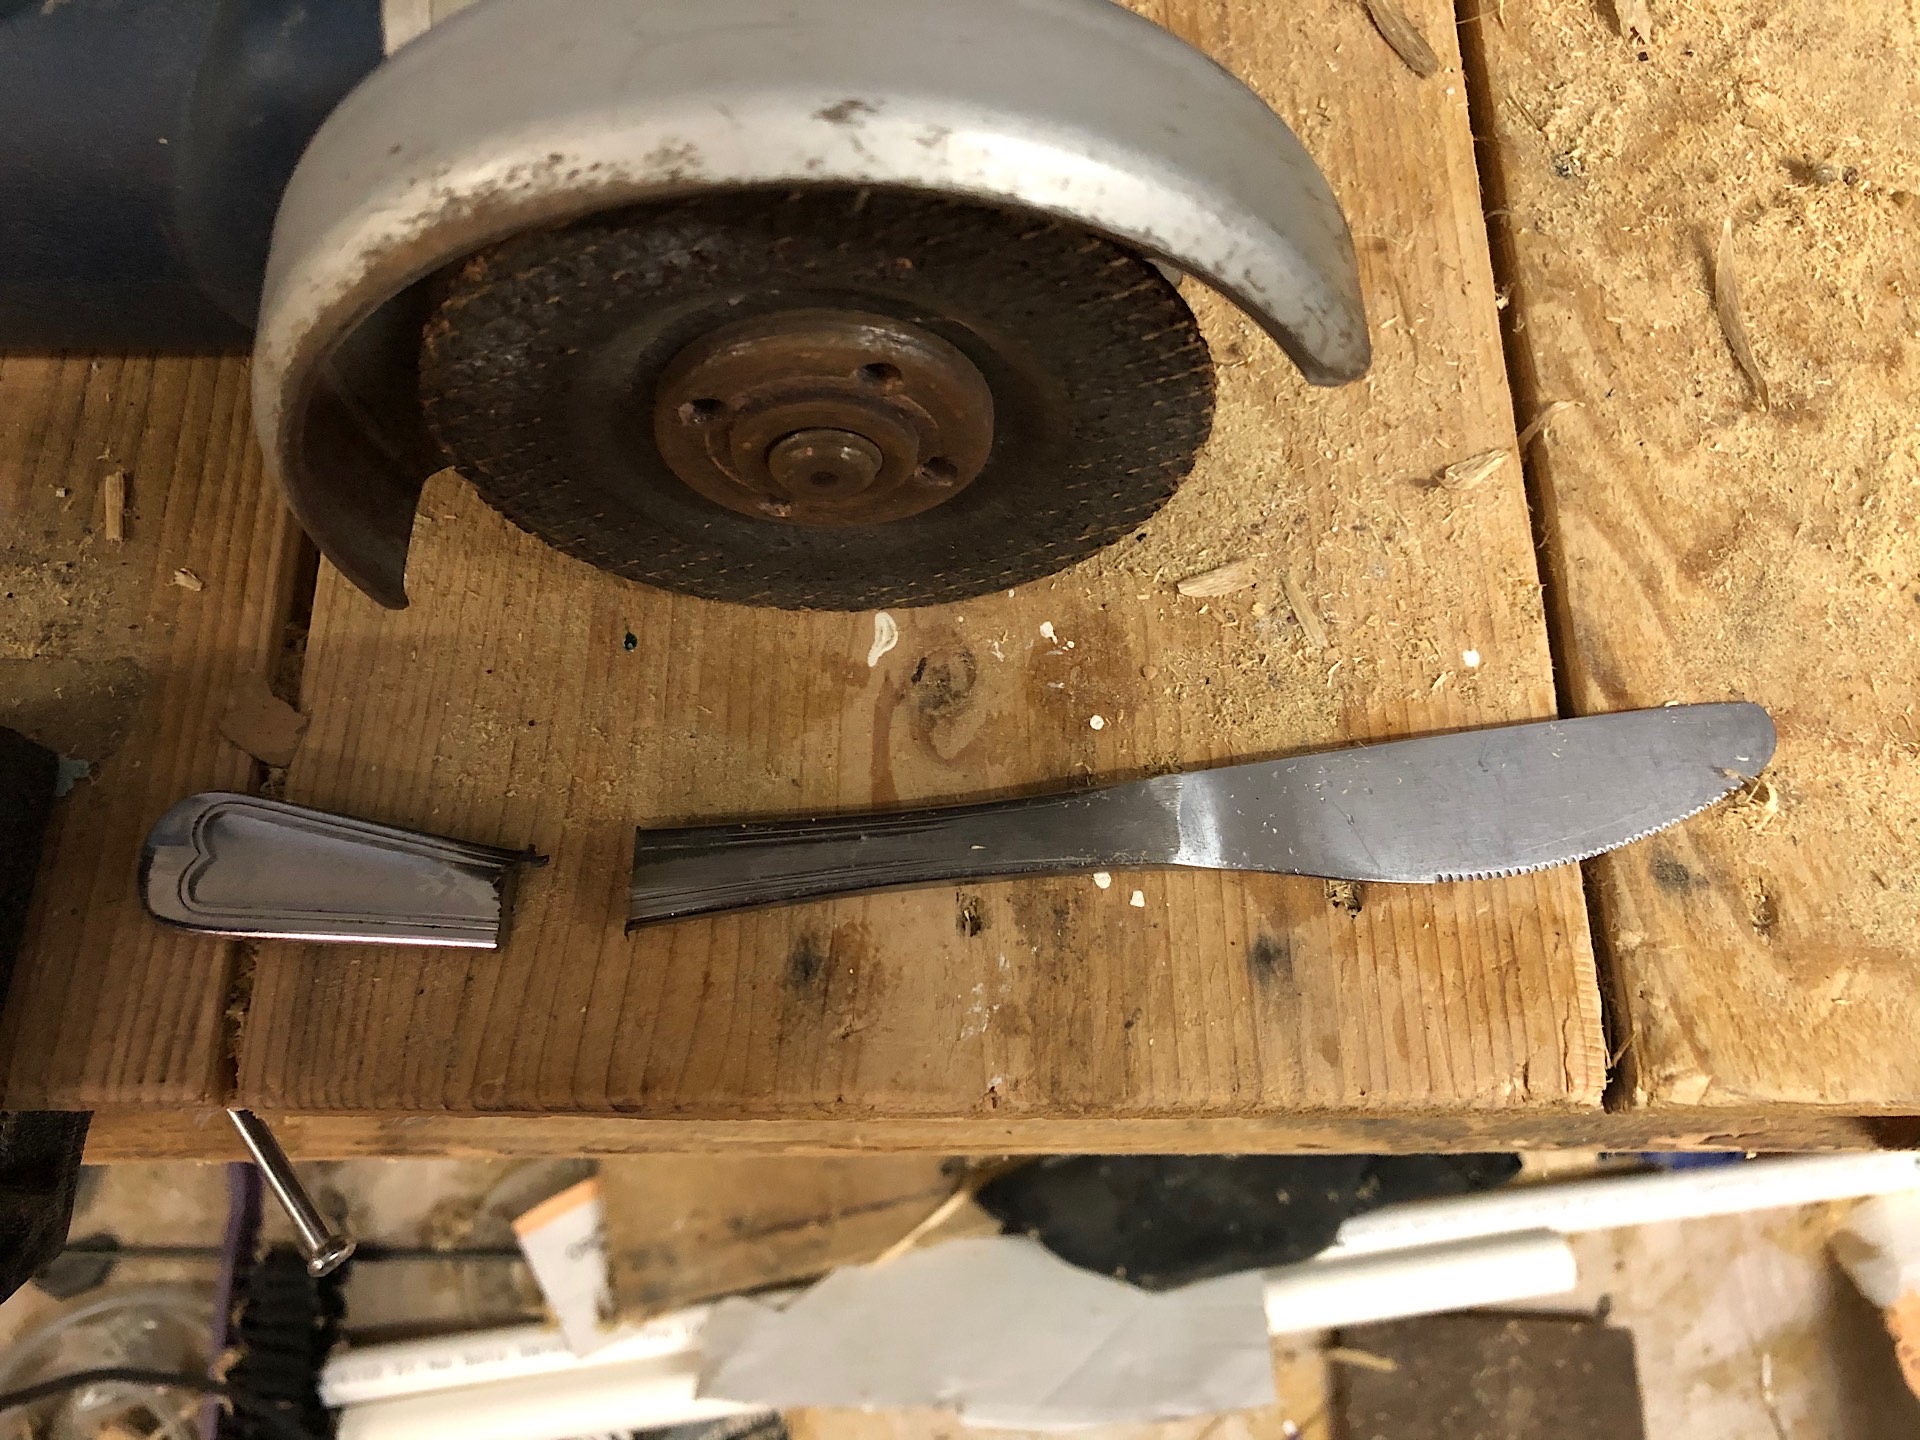 Shortening a butter knife handle